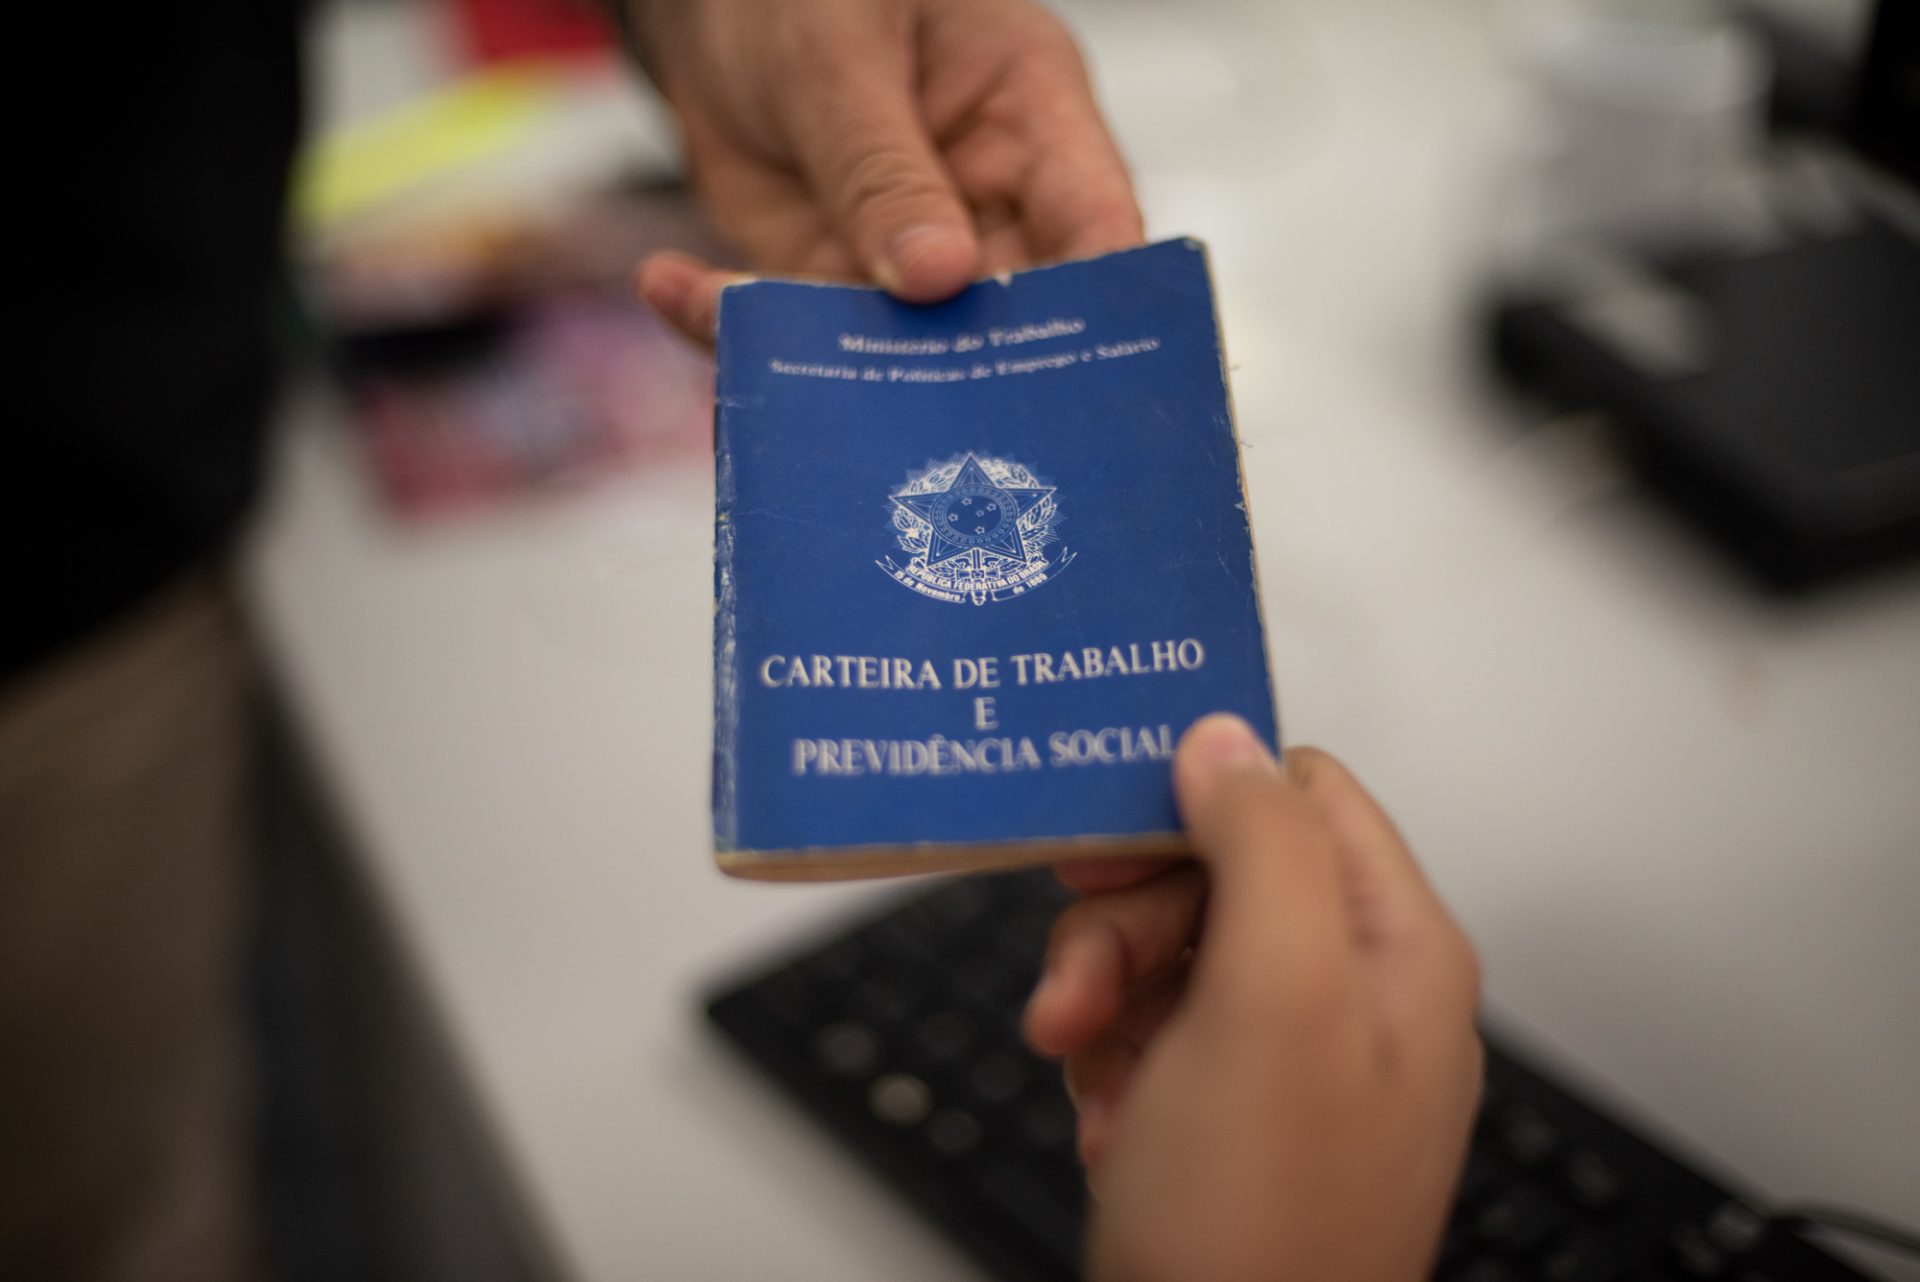 Dados sobre emprego formal, contratações nos estados e salários são apurados pelo Caged - Foto: Dvi Pinheiro | Governo do Ceará